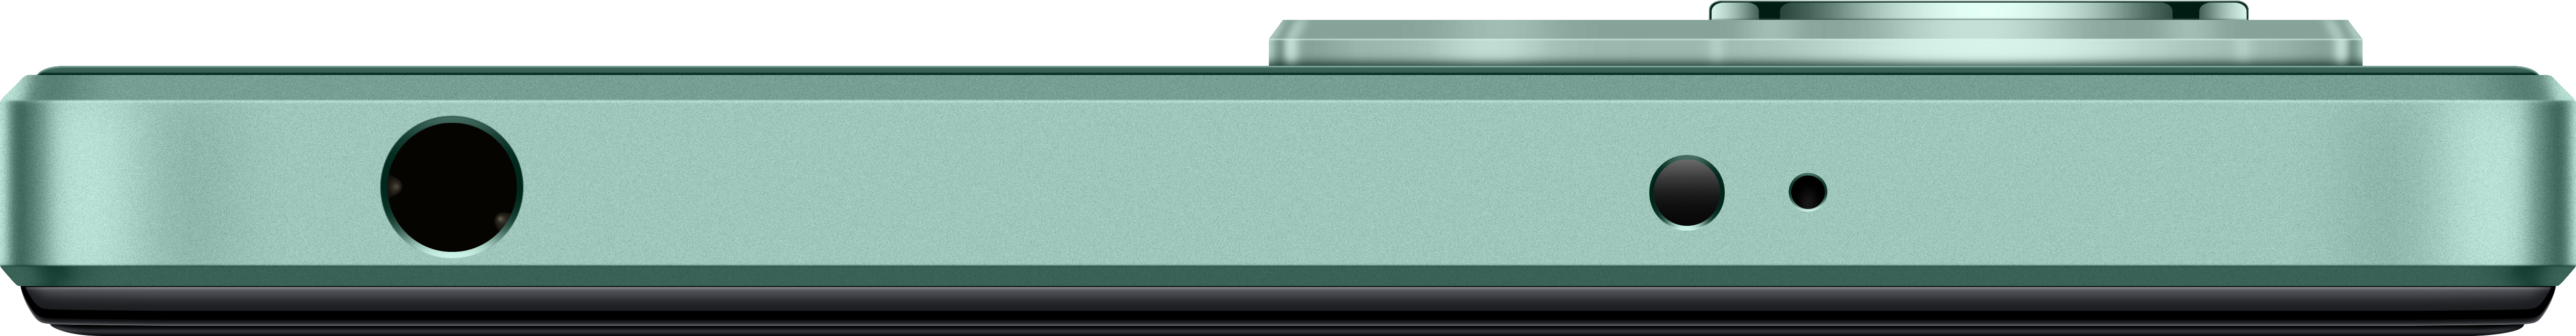 Redmi Green Dual GB 12 128 XIAOMI Mint SIM Note